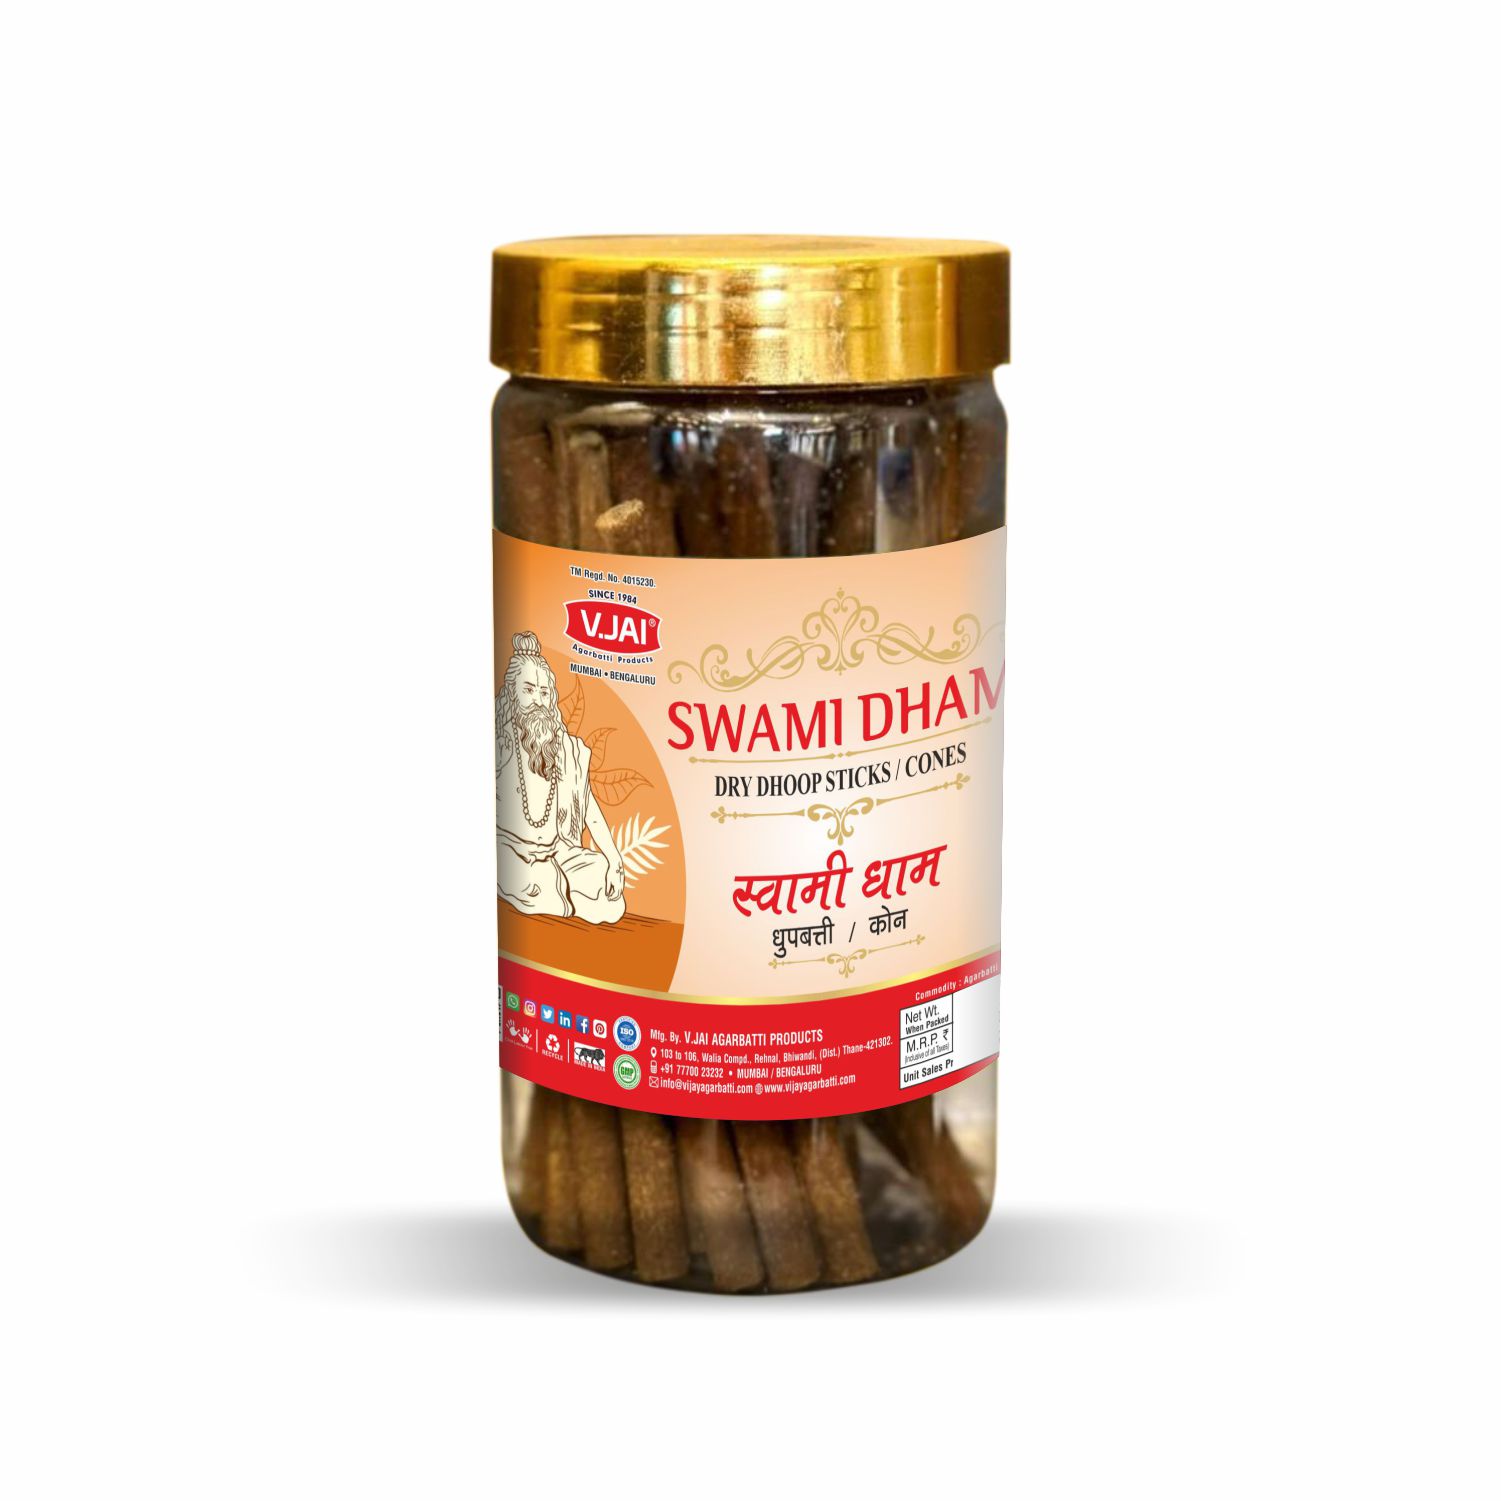 Swami Dham 100gm Pet Jar